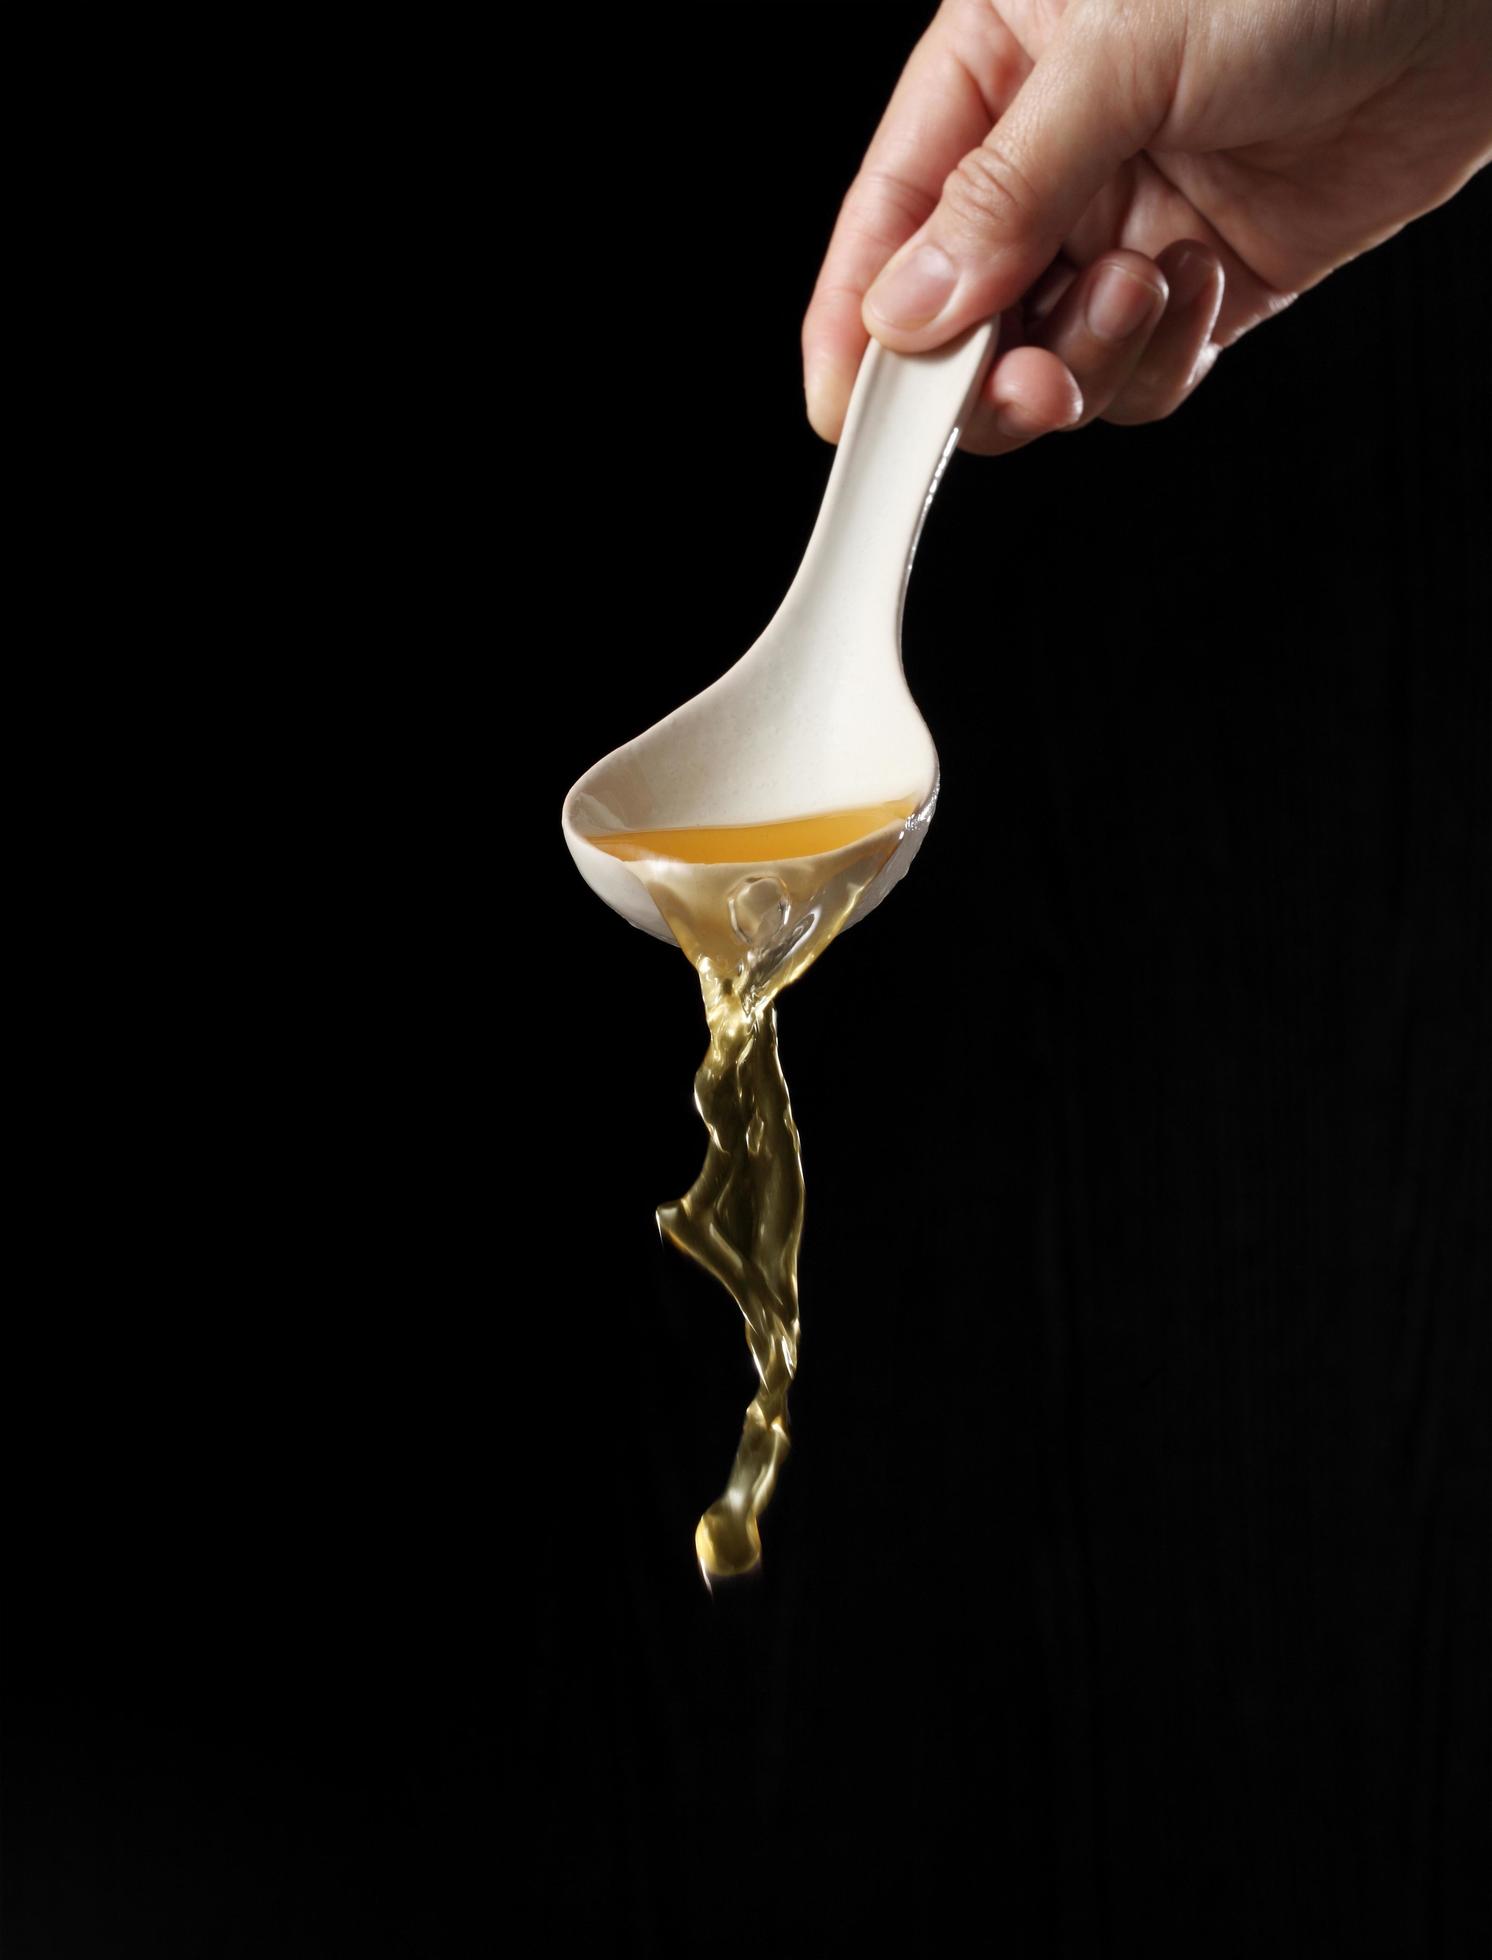 cucchiaio versando la zuppa di noodle isolati su sfondo nero foto